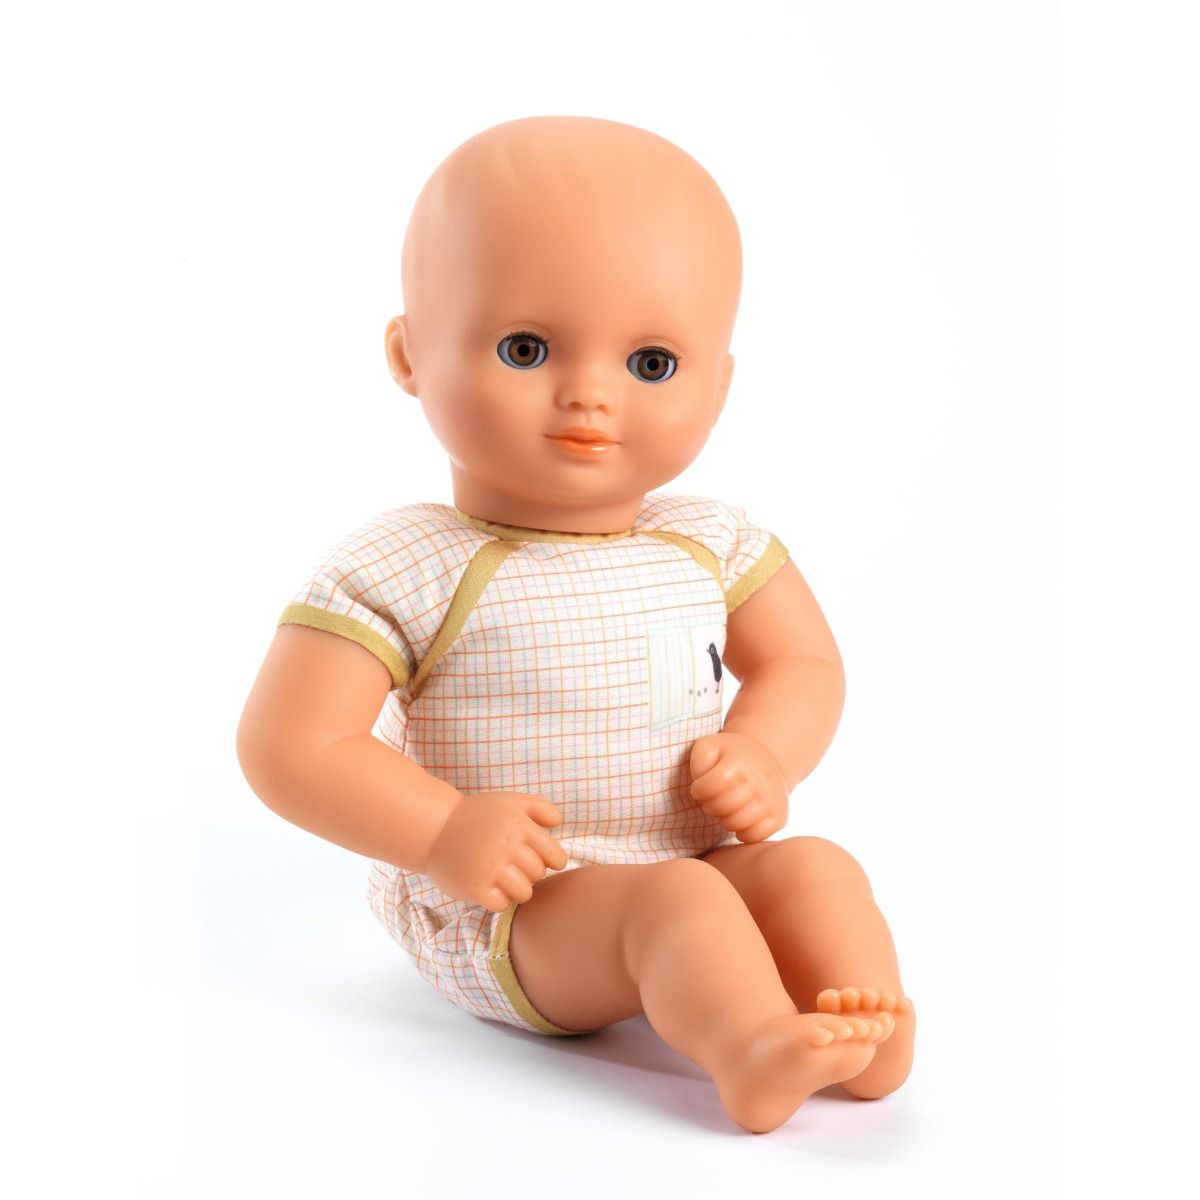 djeco pop aangekleed (32 cm) - baby praline